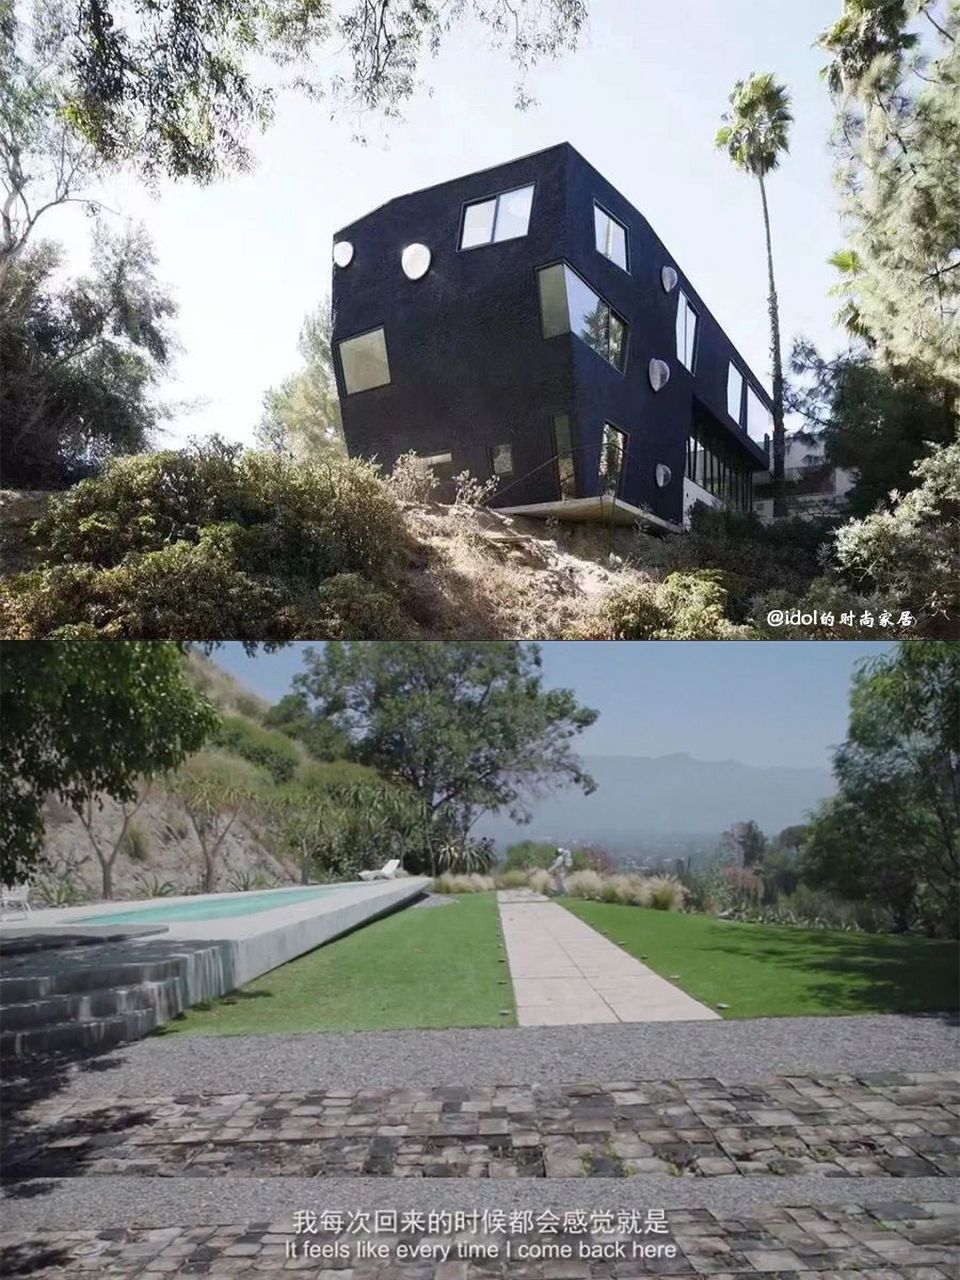 27岁马伯骞在美国洛杉矶的千万豪宅火了,房子依山而建,像个艺术感